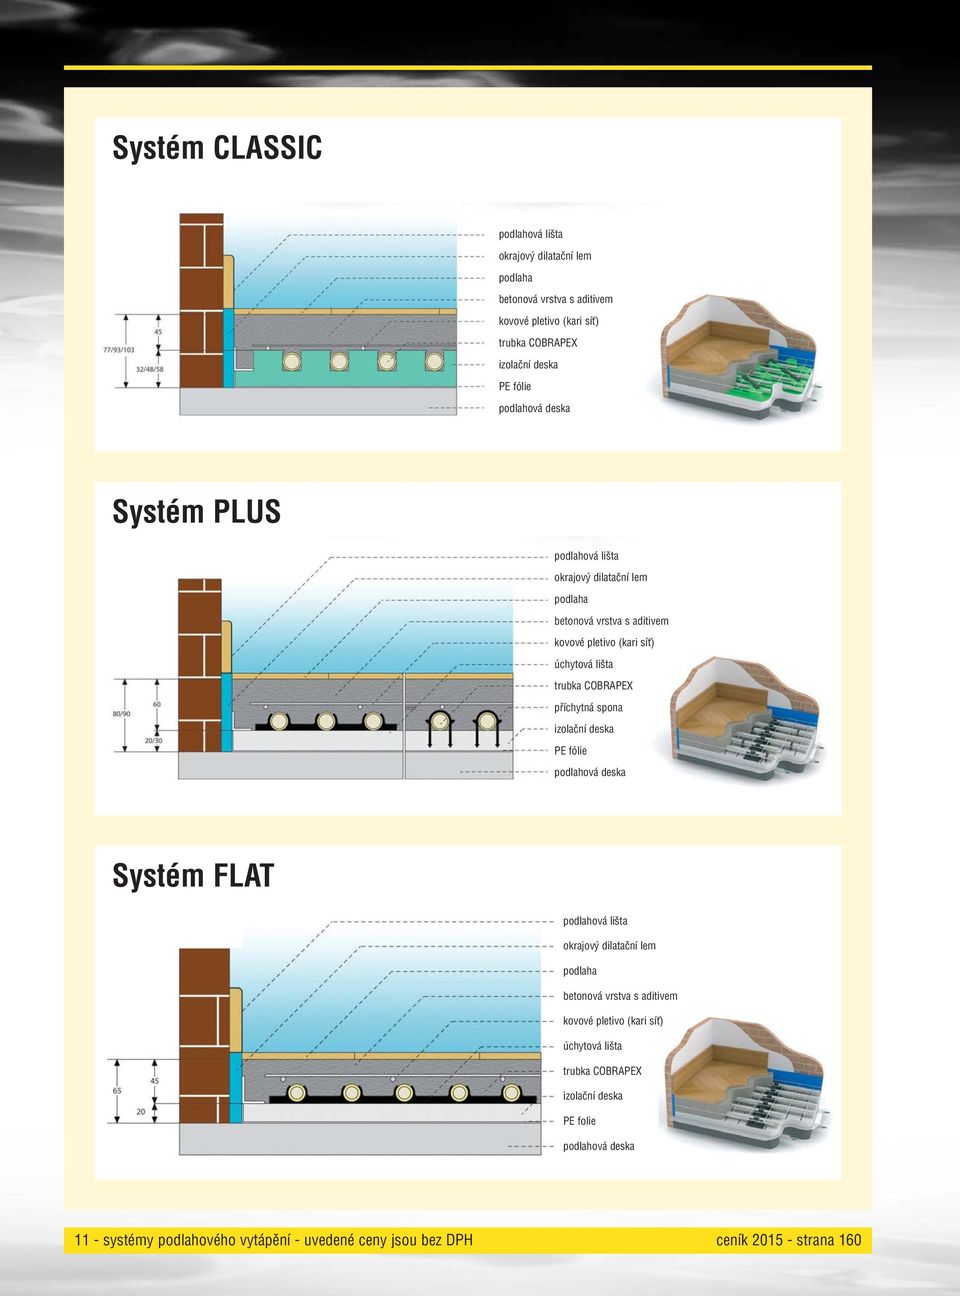 COBRAPEX příchytná spona izolační deska PE fólie podlahová deska Systém FLAT podlahová lišta okrajový dilatační lem podlaha betonová vrstva s aditivem